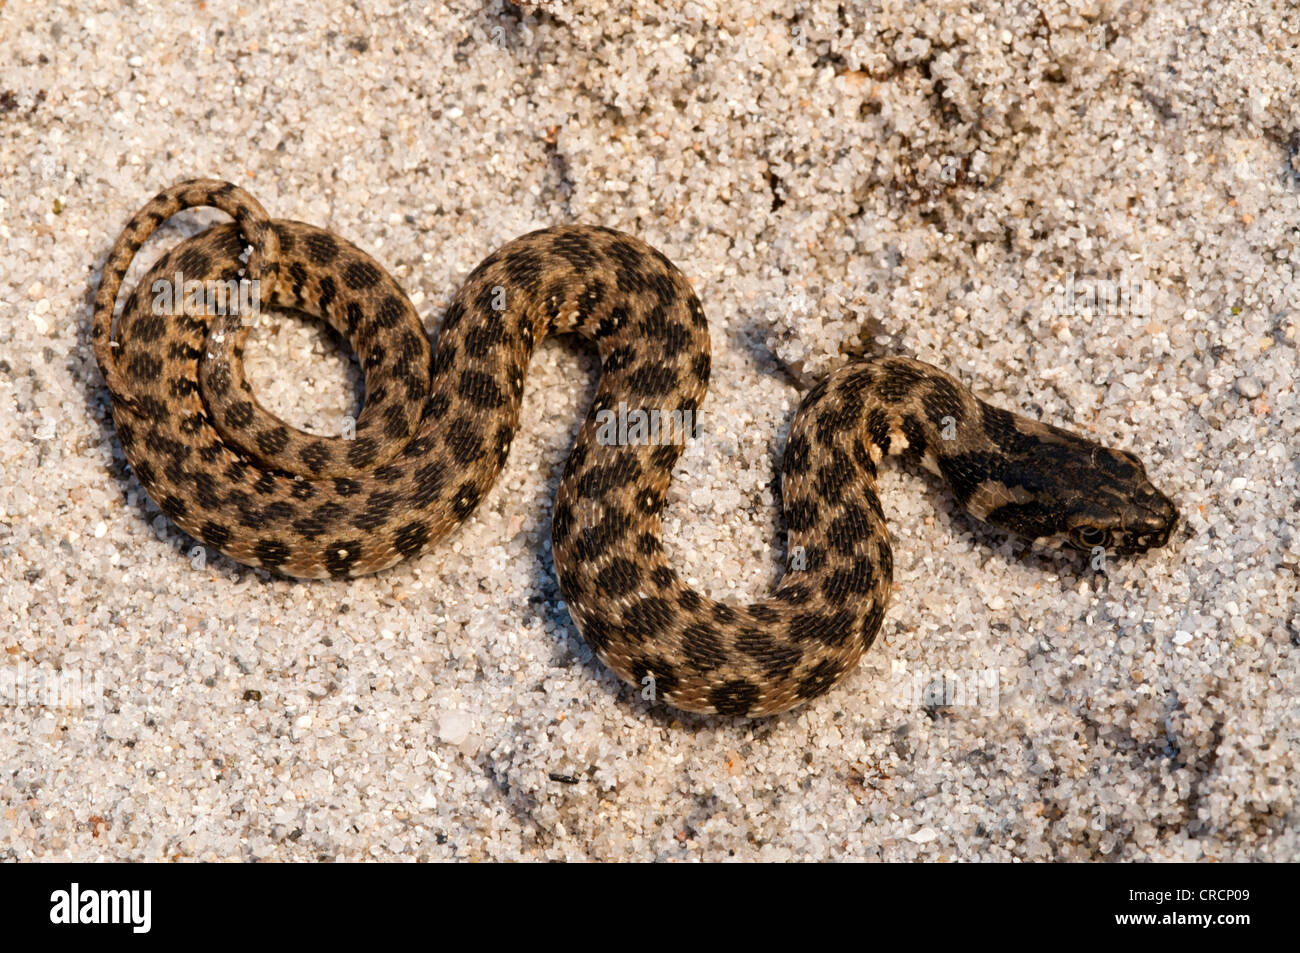 Viperine water snake, Viperine snake (Natrix maura), Sardinia, Italy, Europe Stock Photo